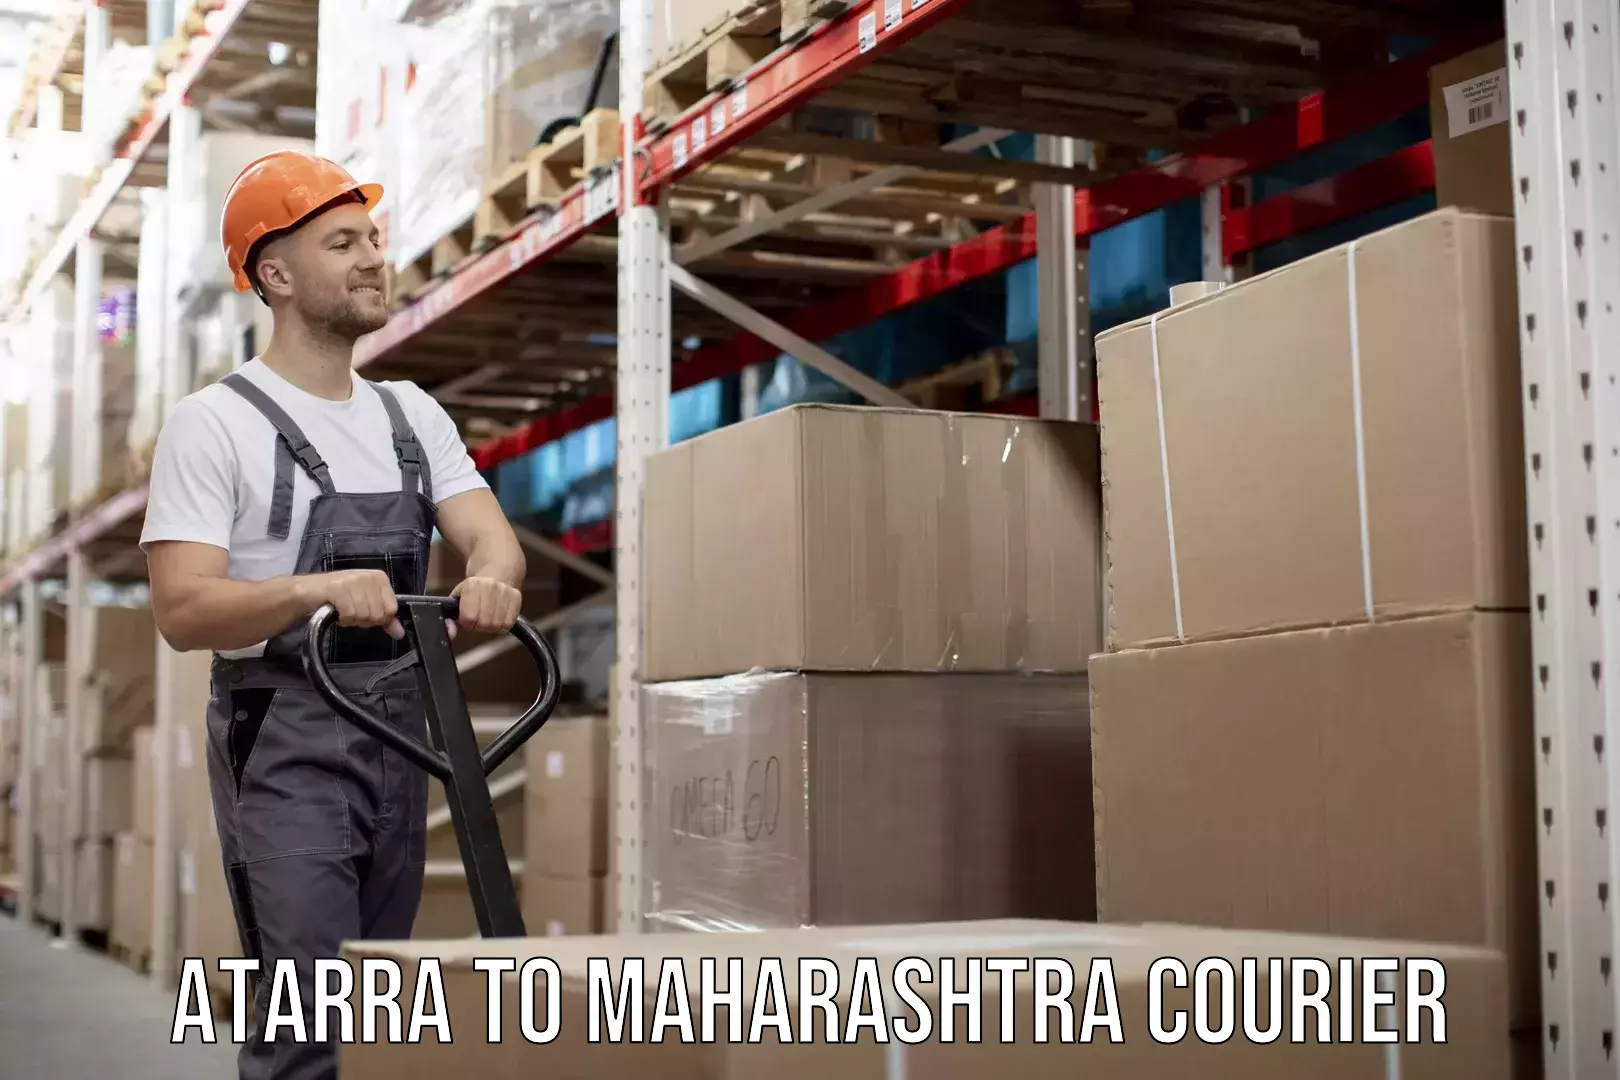 On-call courier service Atarra to Maharashtra